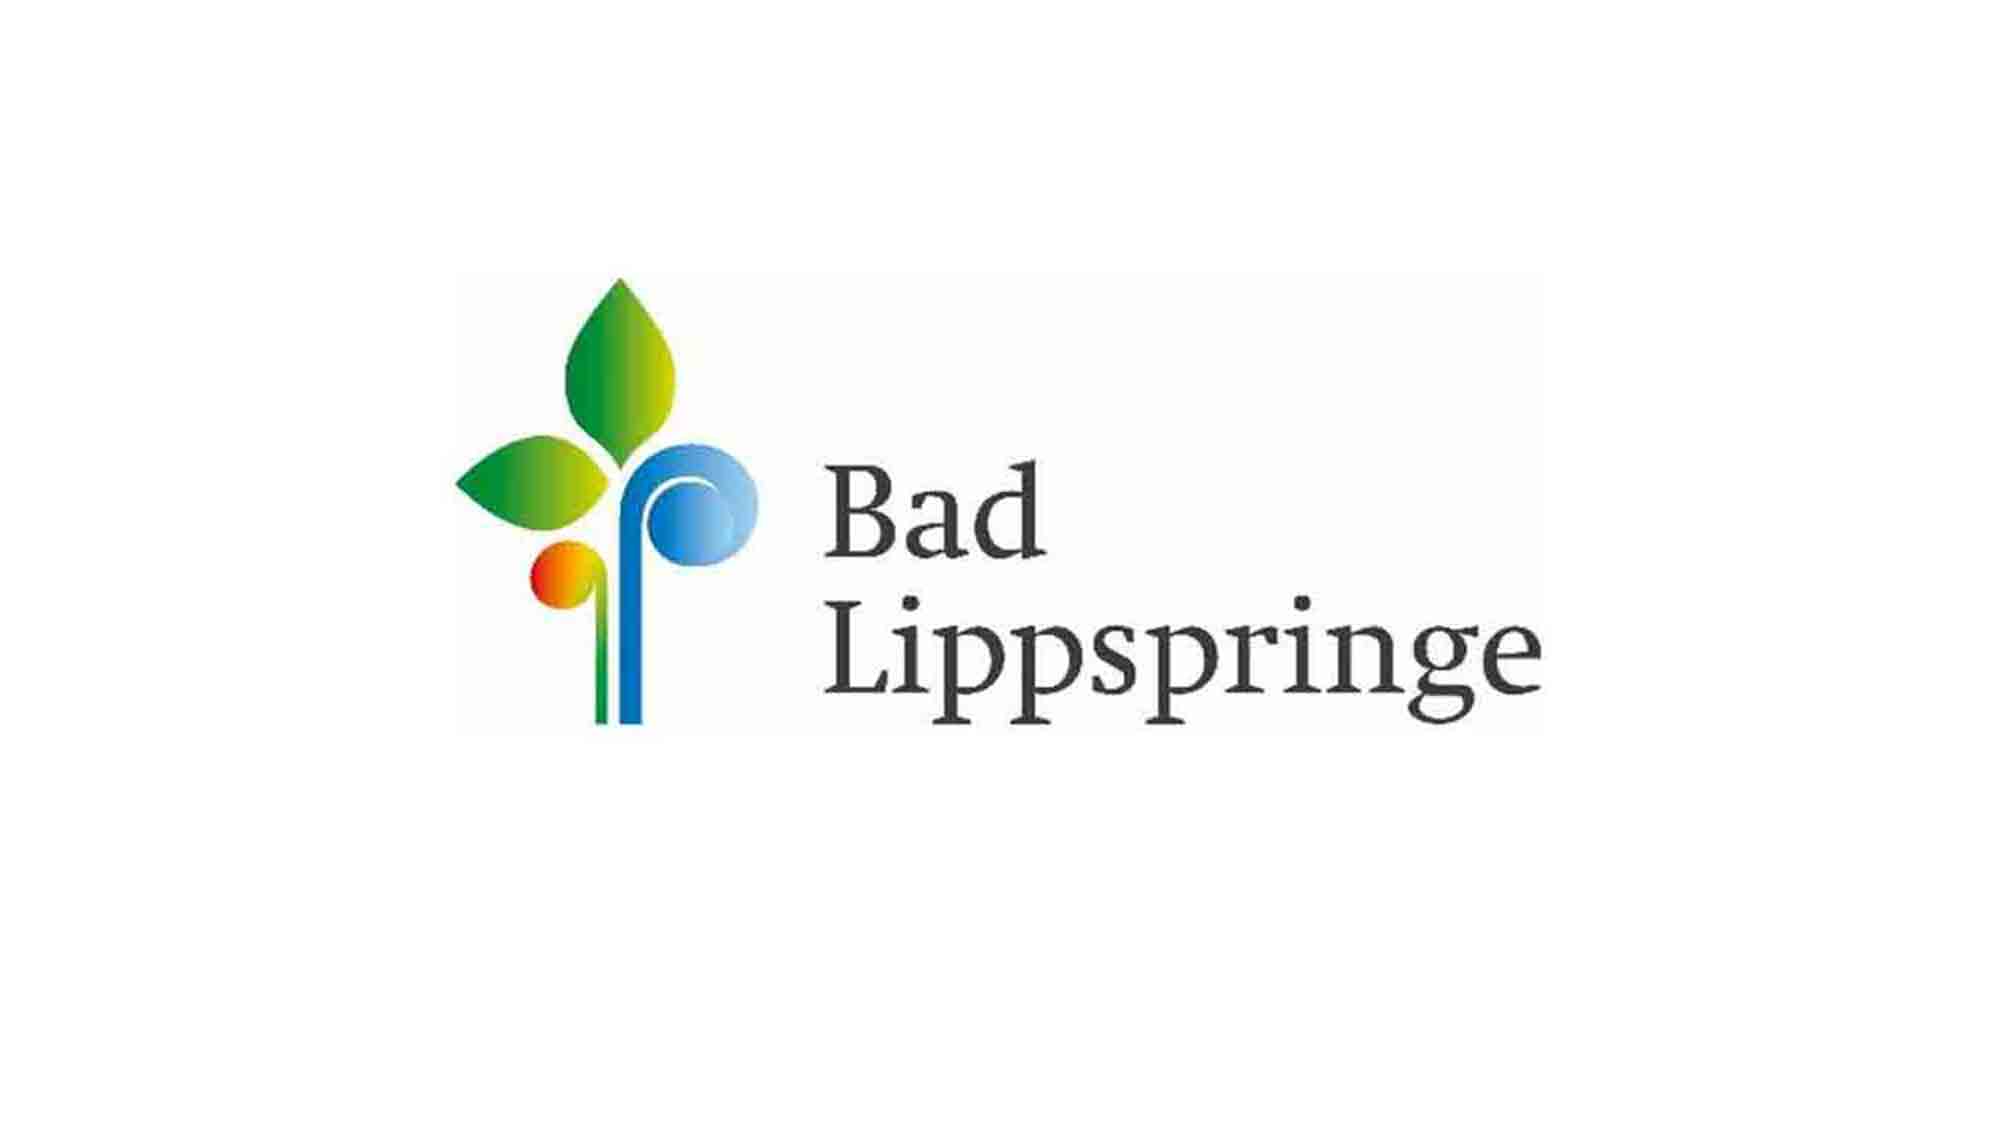 Bad Lippspringe: Finanzierung für die Anlaufphase gesichert, City Outlet